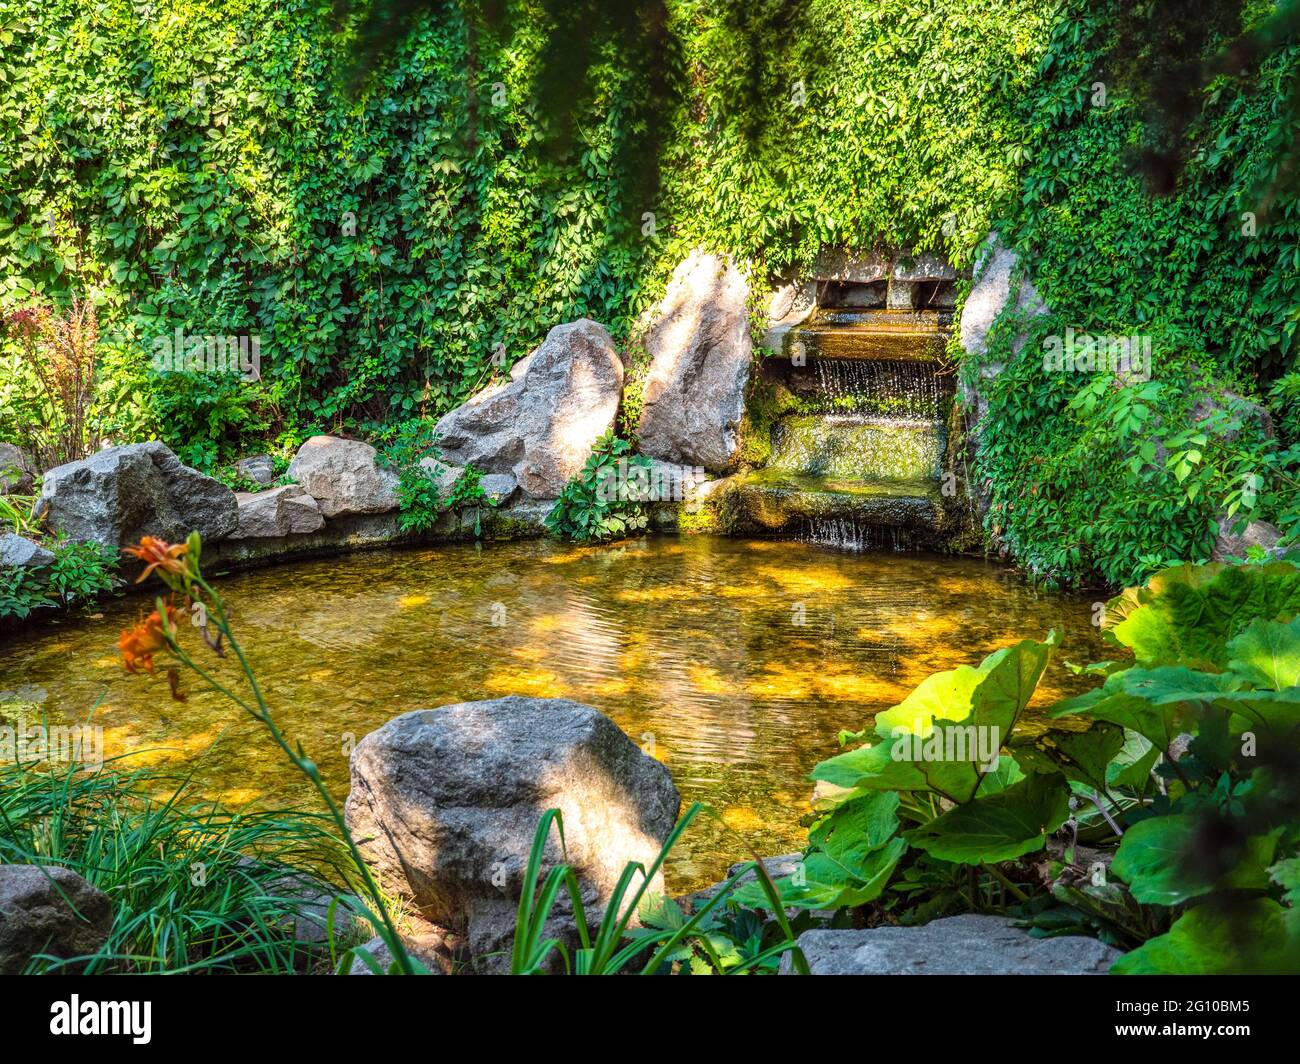 Vue à travers le feuillage au-dessus de la fontaine d'eau au milieu d'une végétation luxuriante avec de l'eau qui coule dans un étang de forme ronde avec de beaux jeux de lumière et d'ombre Banque D'Images